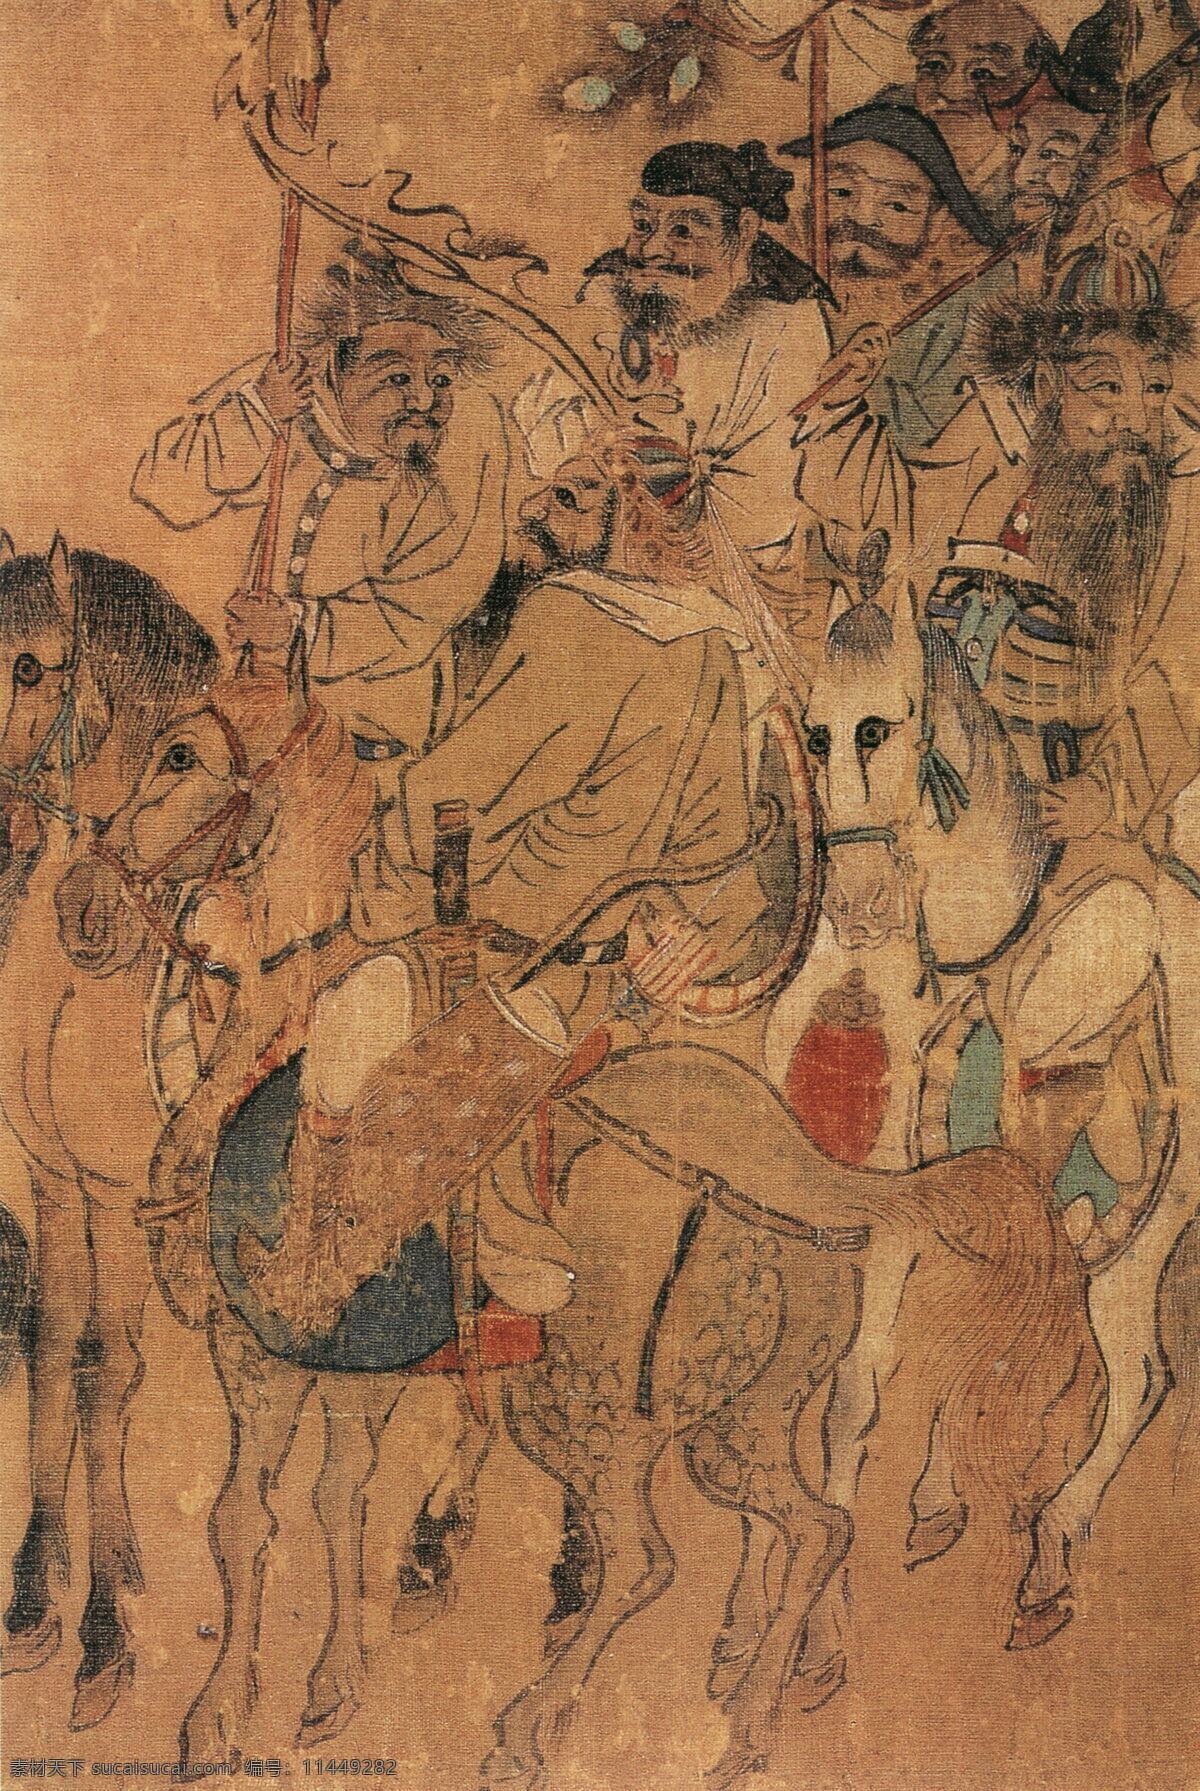 胡人出猎图d 人物画 中国 古画 中国古画 设计素材 人物名画 古典藏画 书画美术 棕色